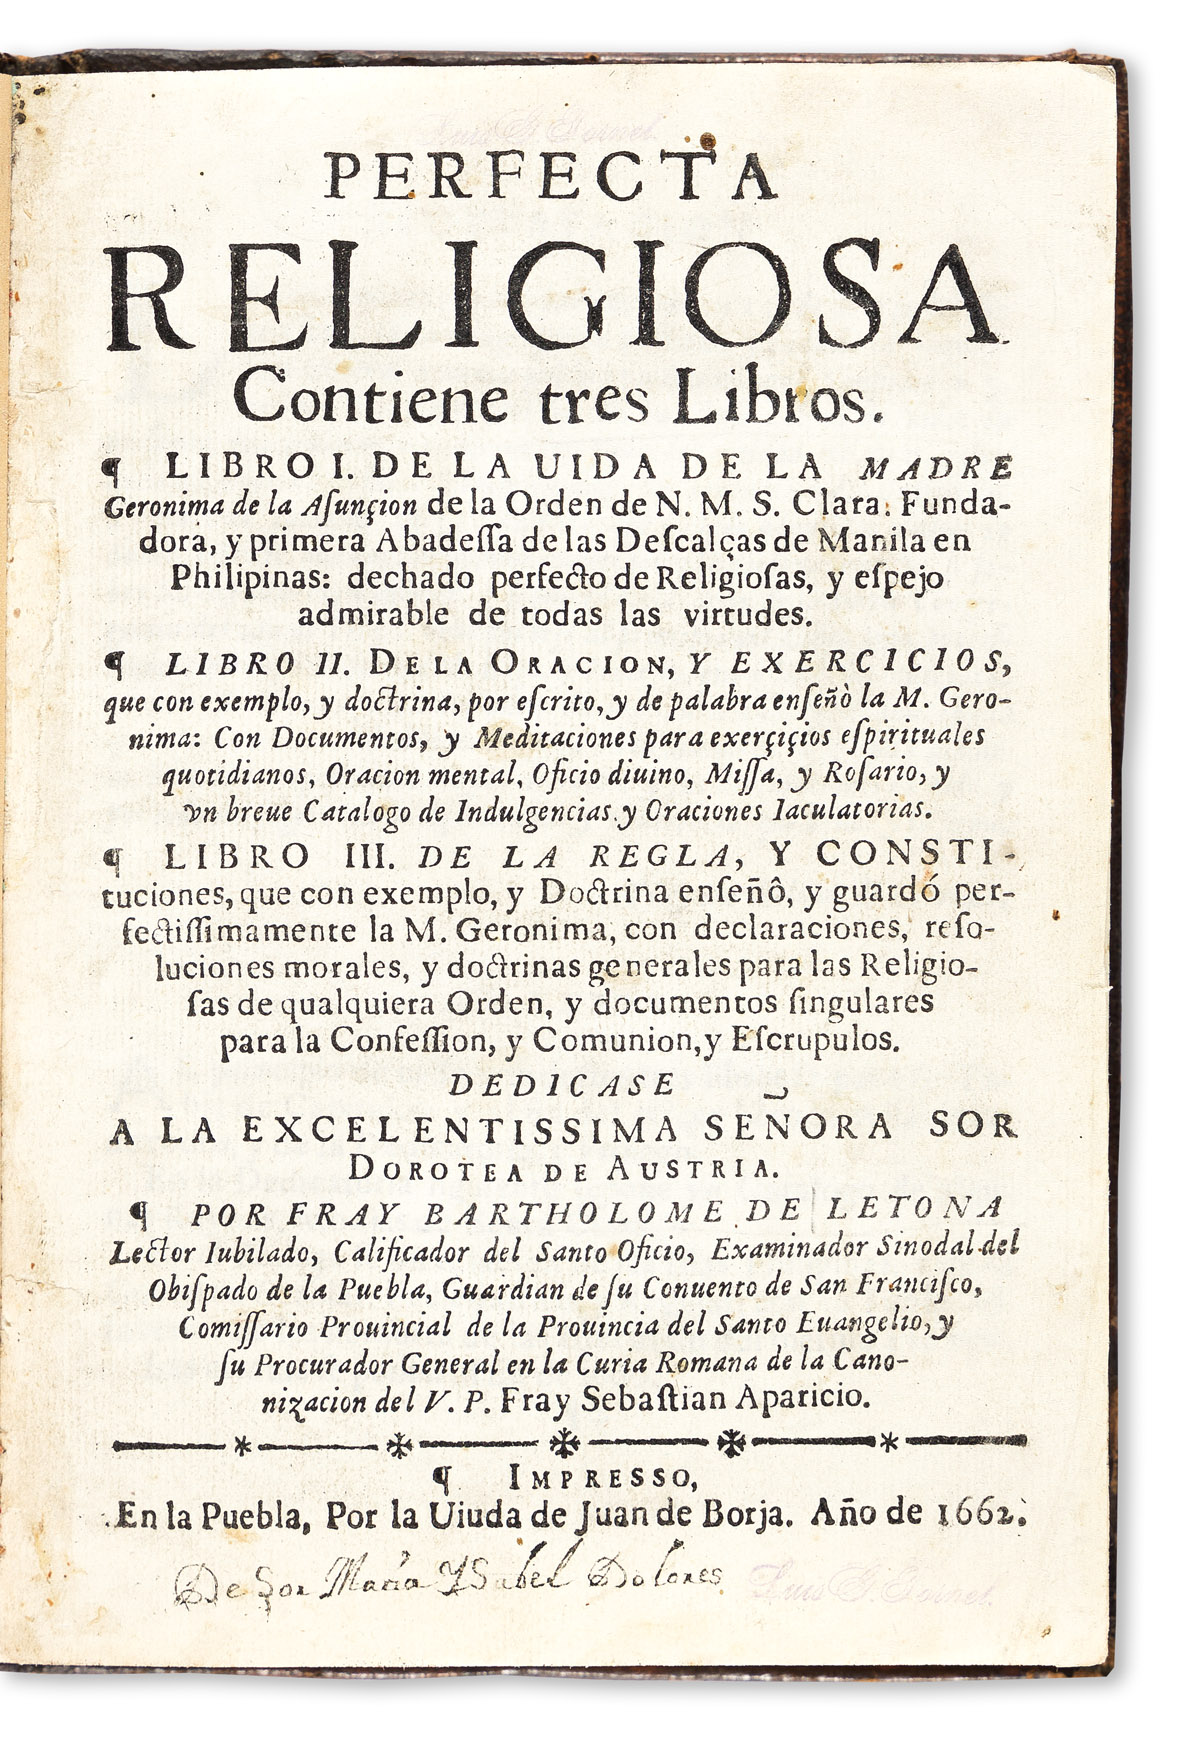 Letona, Bartholomé de (fl. circa 1660) Perfecta Religiosa, Contiene Tres Libros. Libro I. De la Vida de la Madre Geronima de la Asunçio